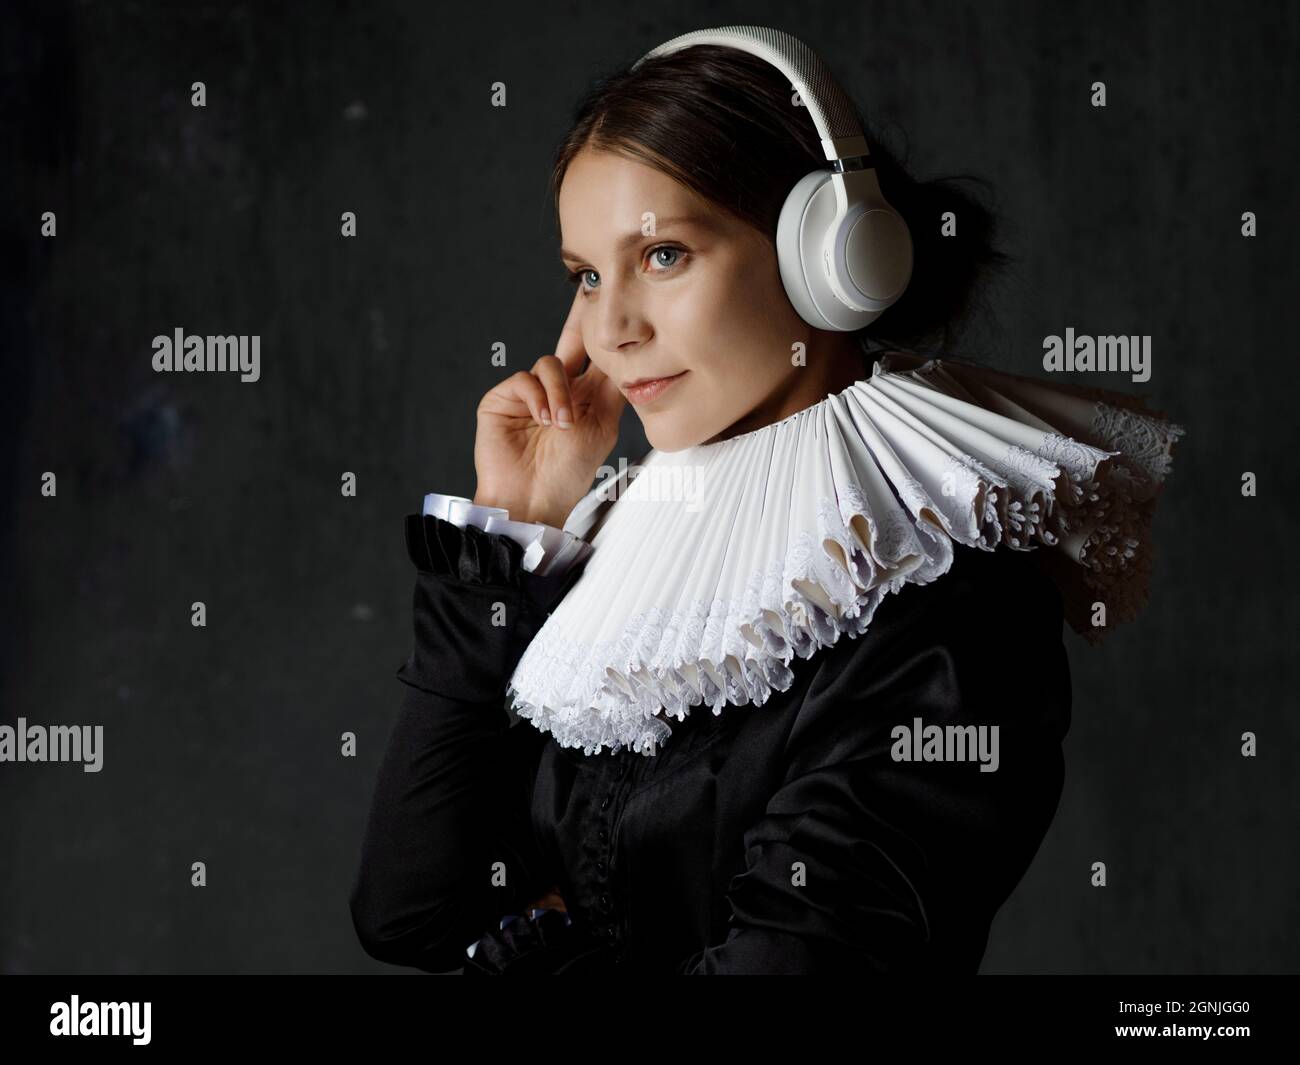 Une femme noble dans un ancien col rond apprécie la musique avec un casque  Bluetooth sans fil moderne. Portrait de style Renaissance Photo Stock -  Alamy